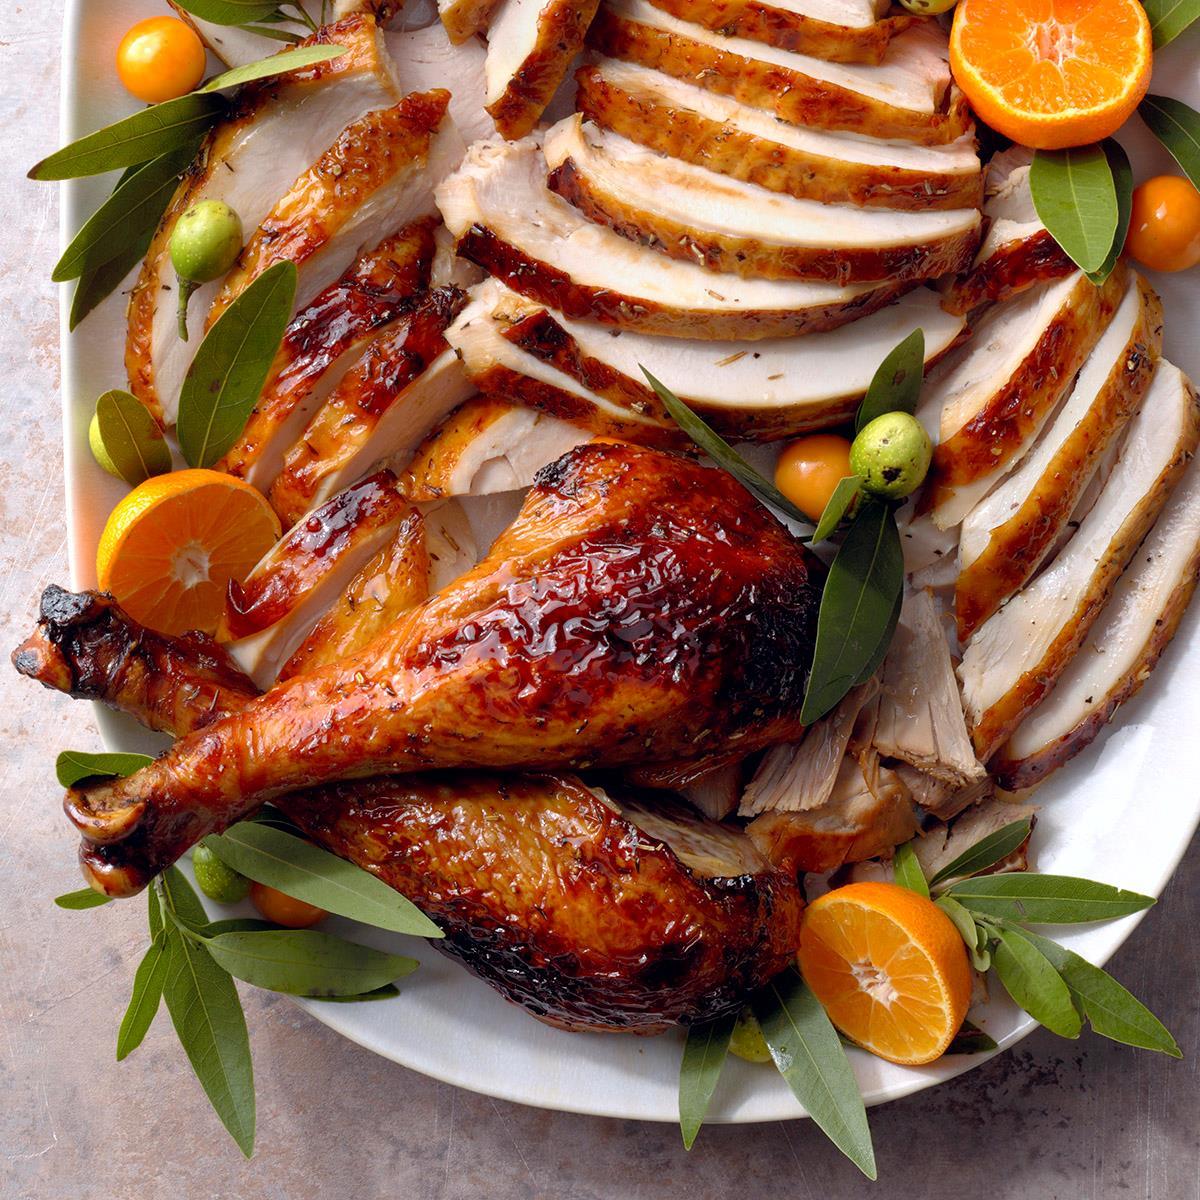 Herb-Glazed Turkey image